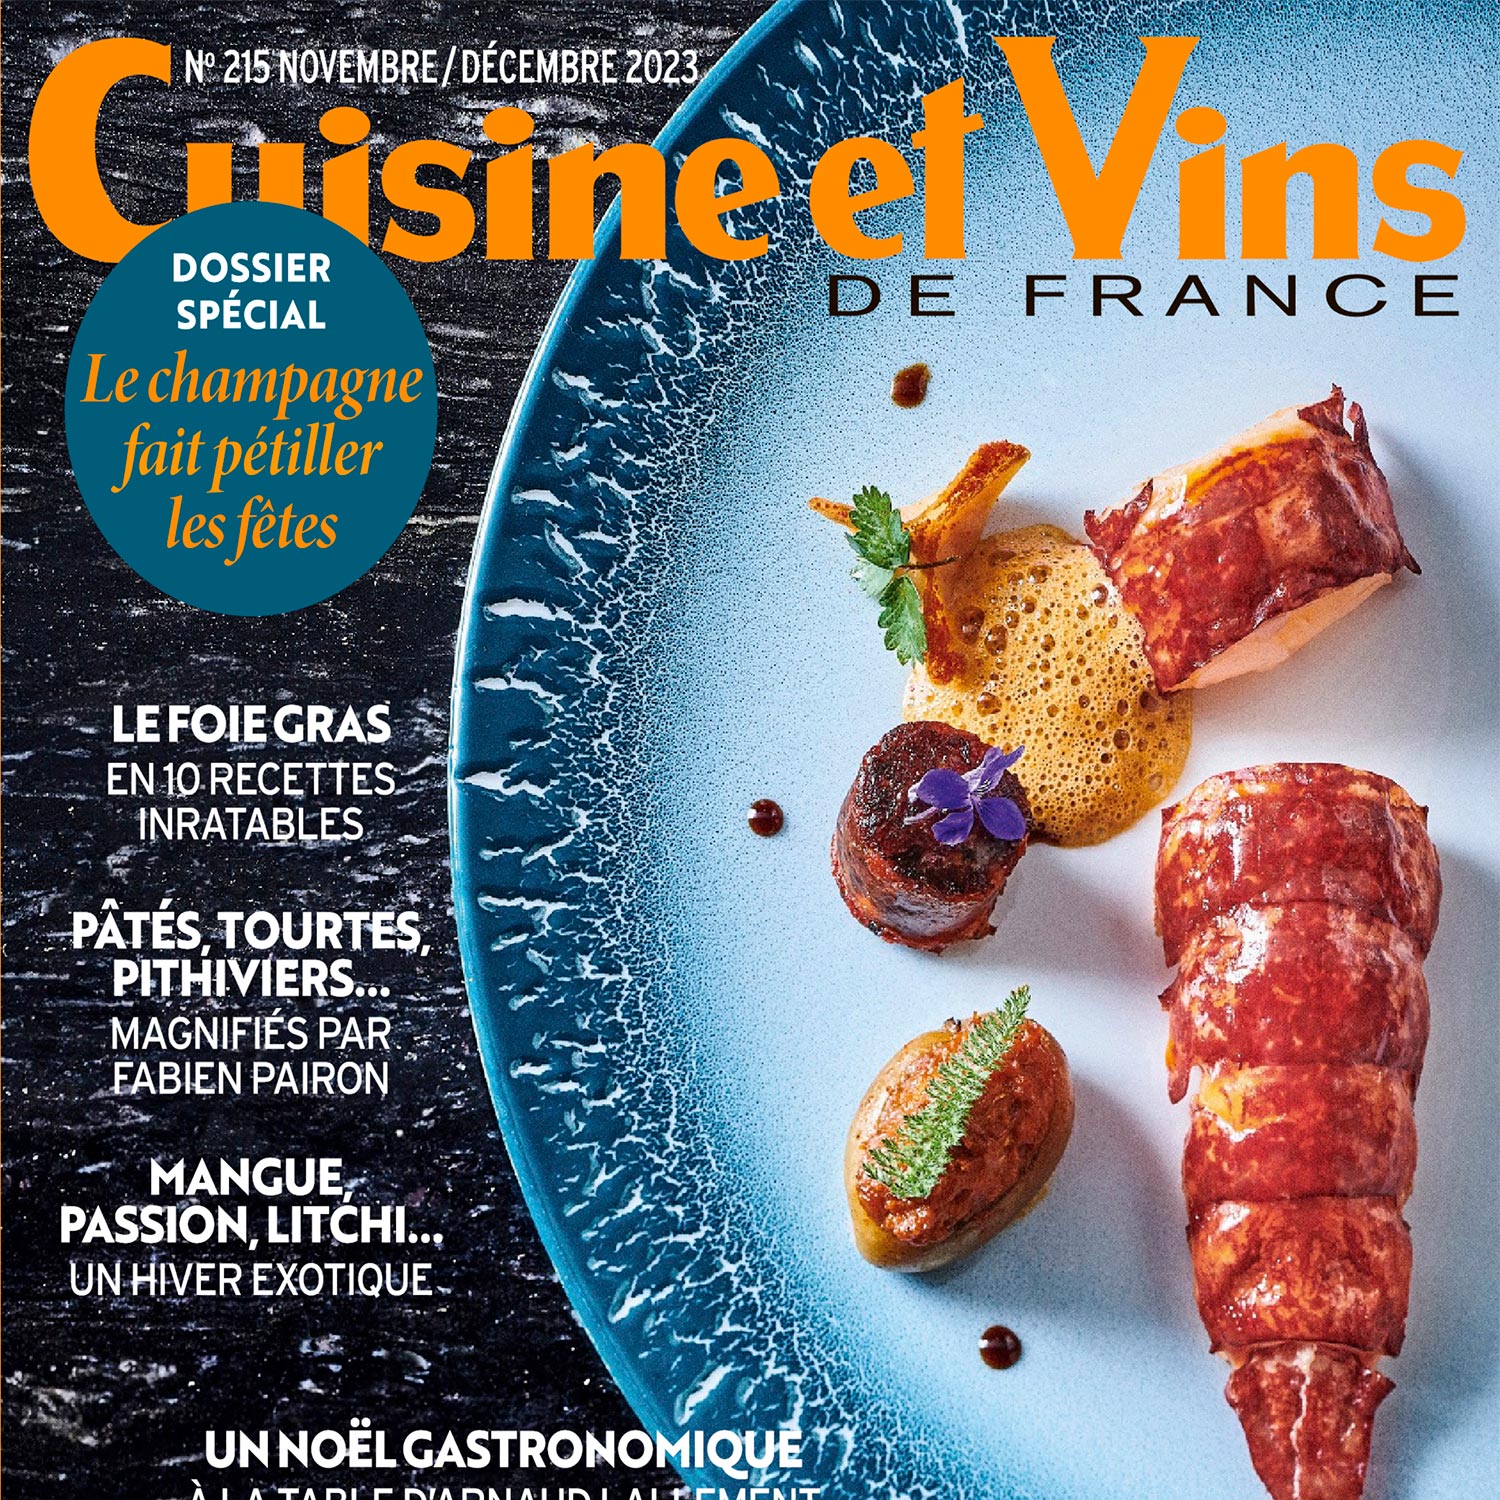 Cuisine et vins de france magazine